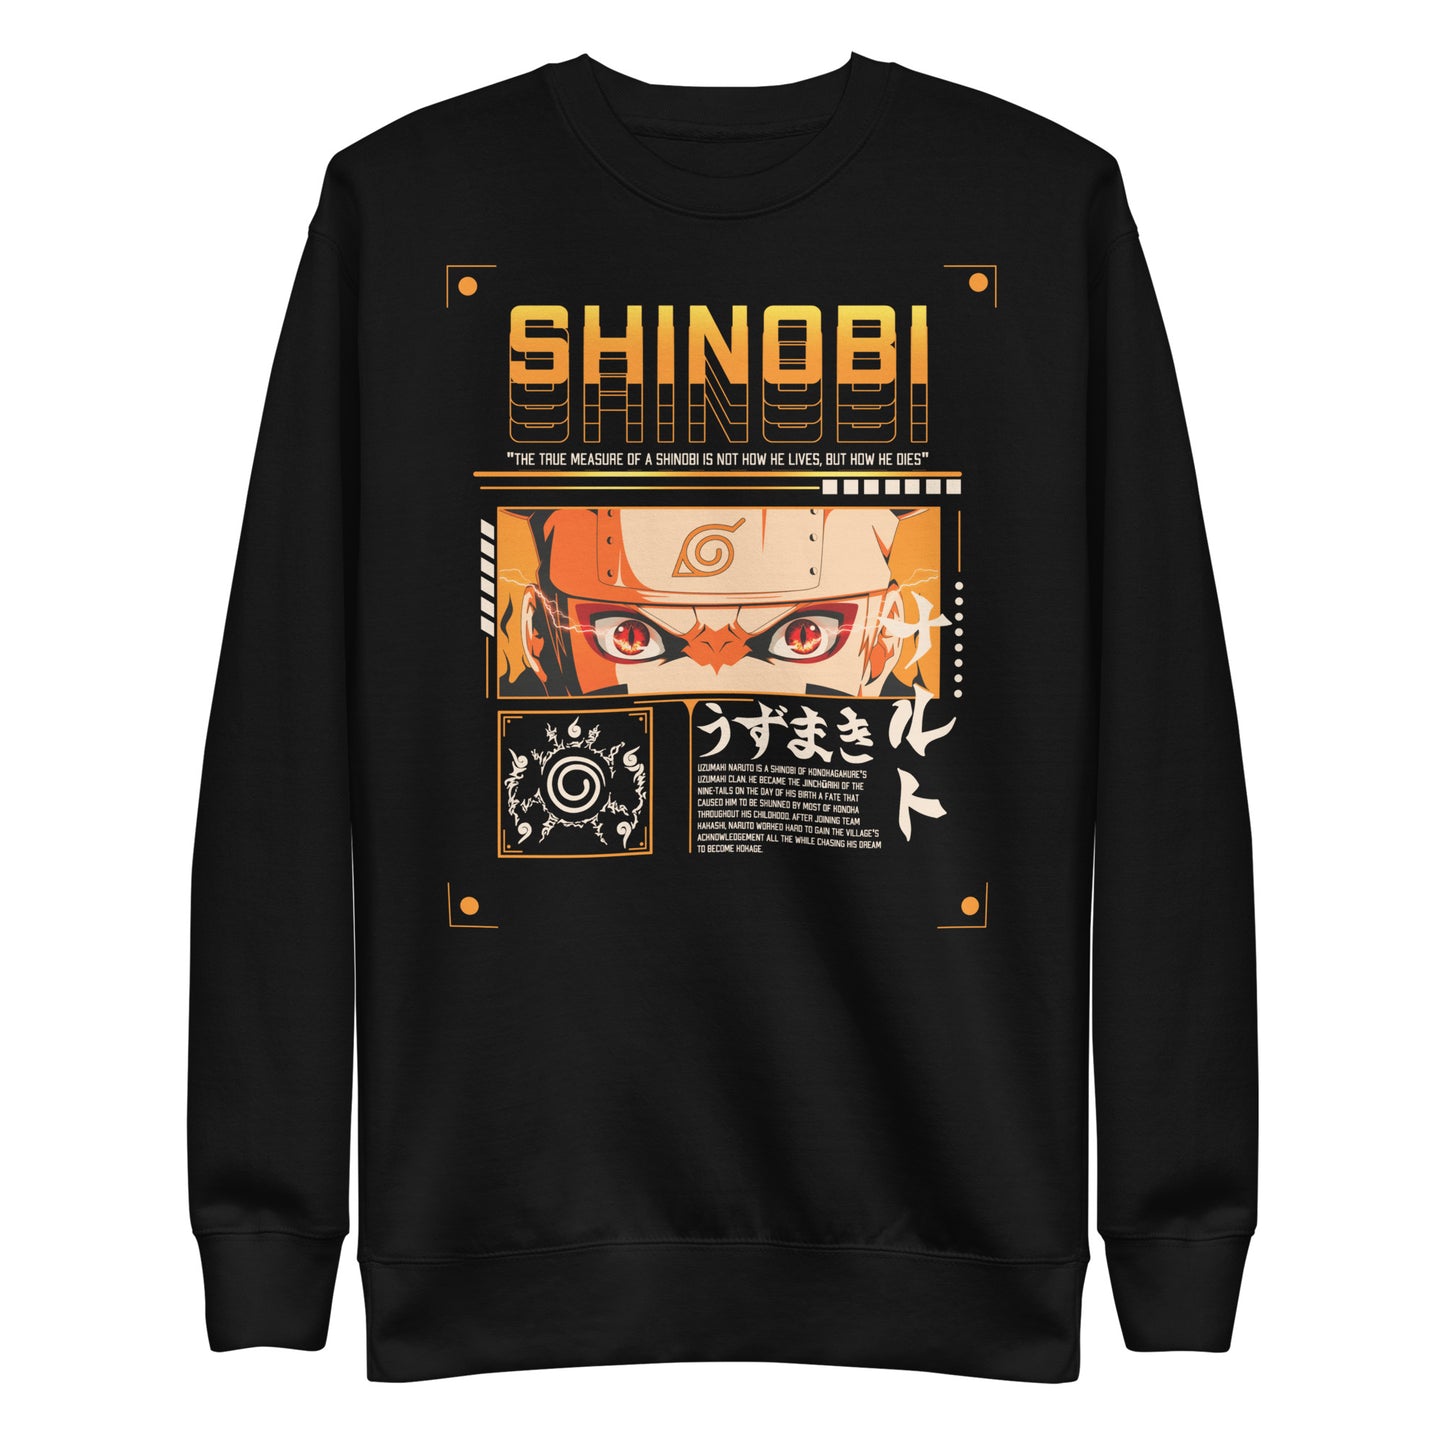 Naruto (SHINOBI) Sweatshirt